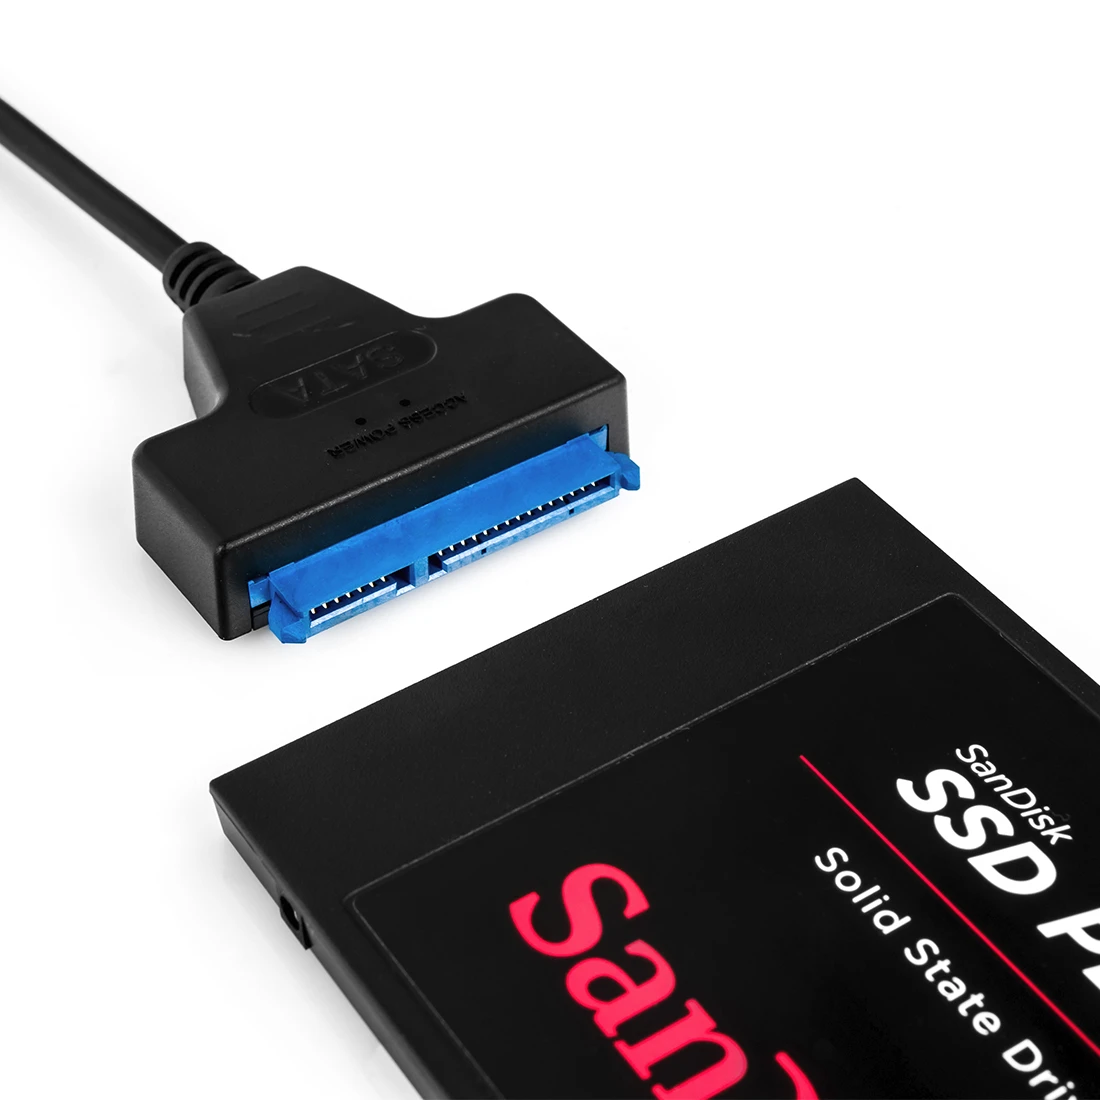 zewnętrzny PVR SSD SanDisk do dekoderów STB